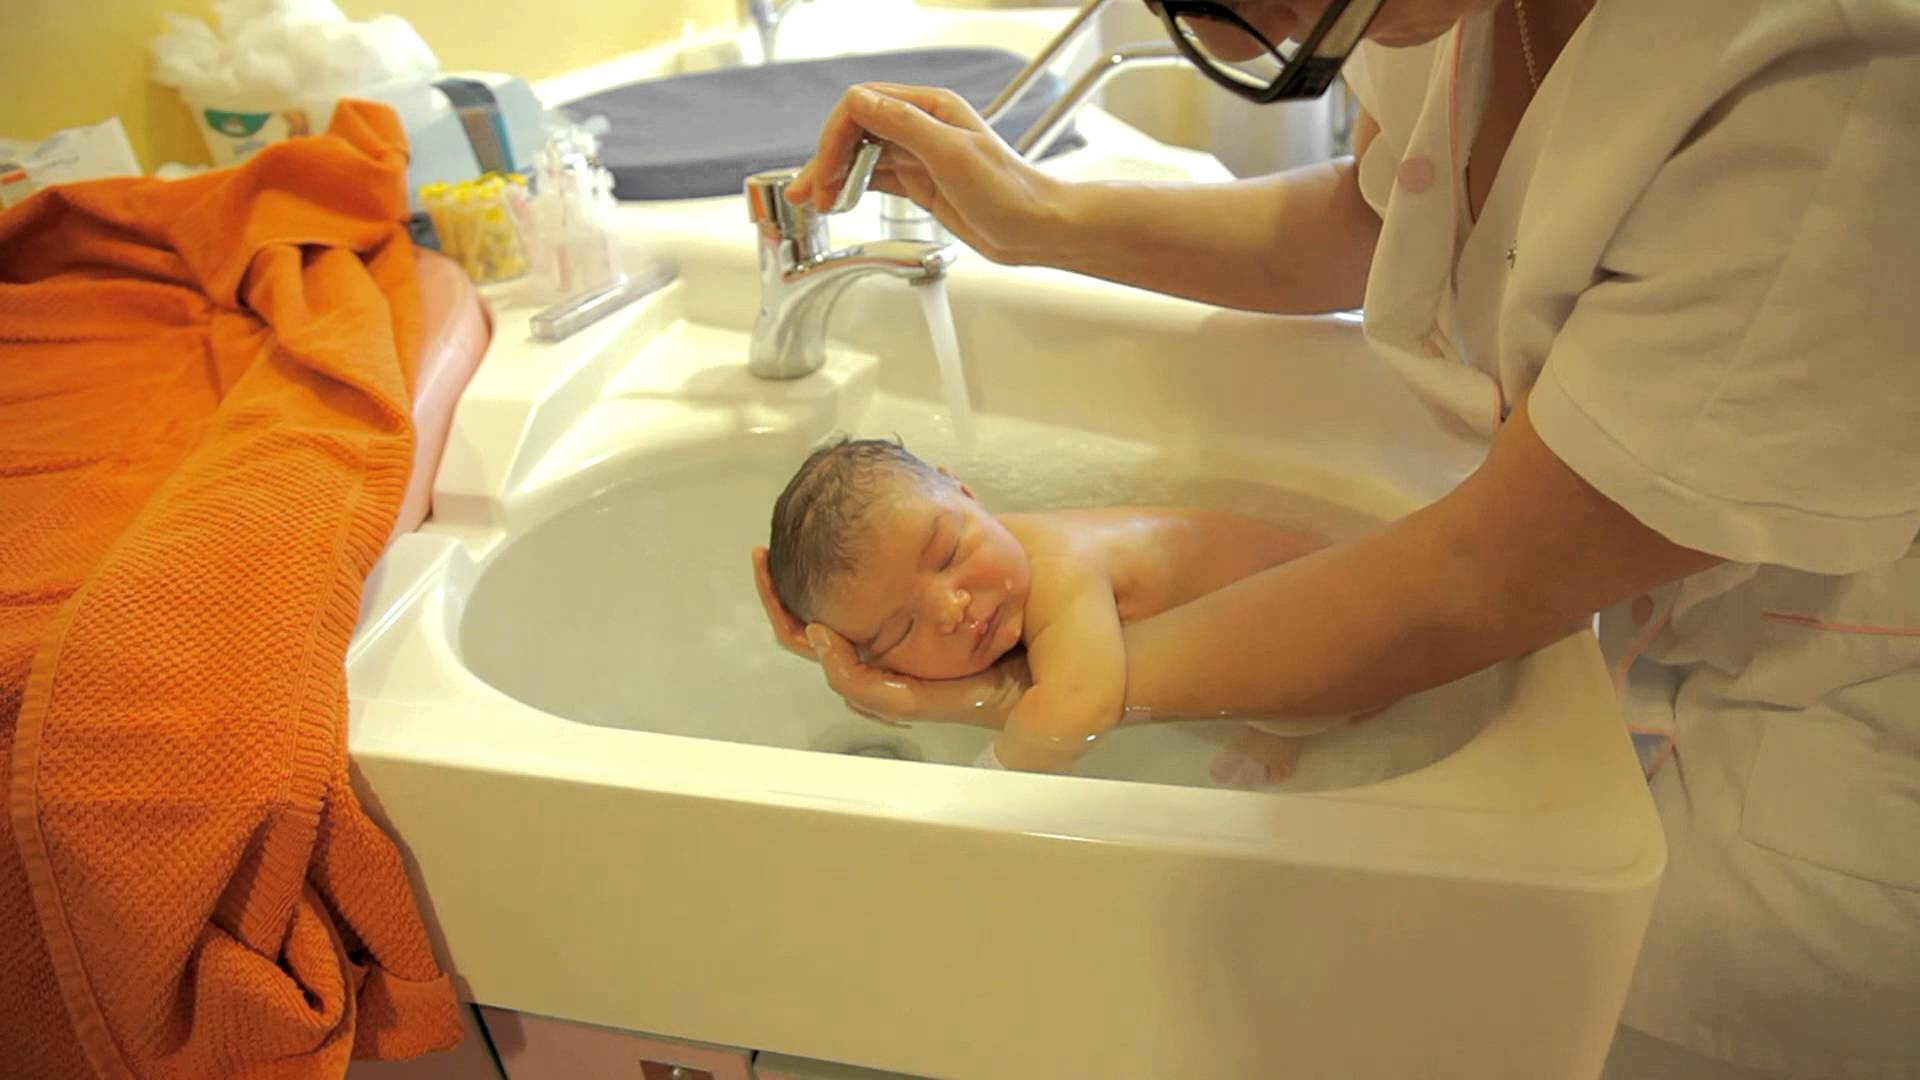 Nu hyllas sjuksköterskans metod för att bada spädbarn. Se detta!